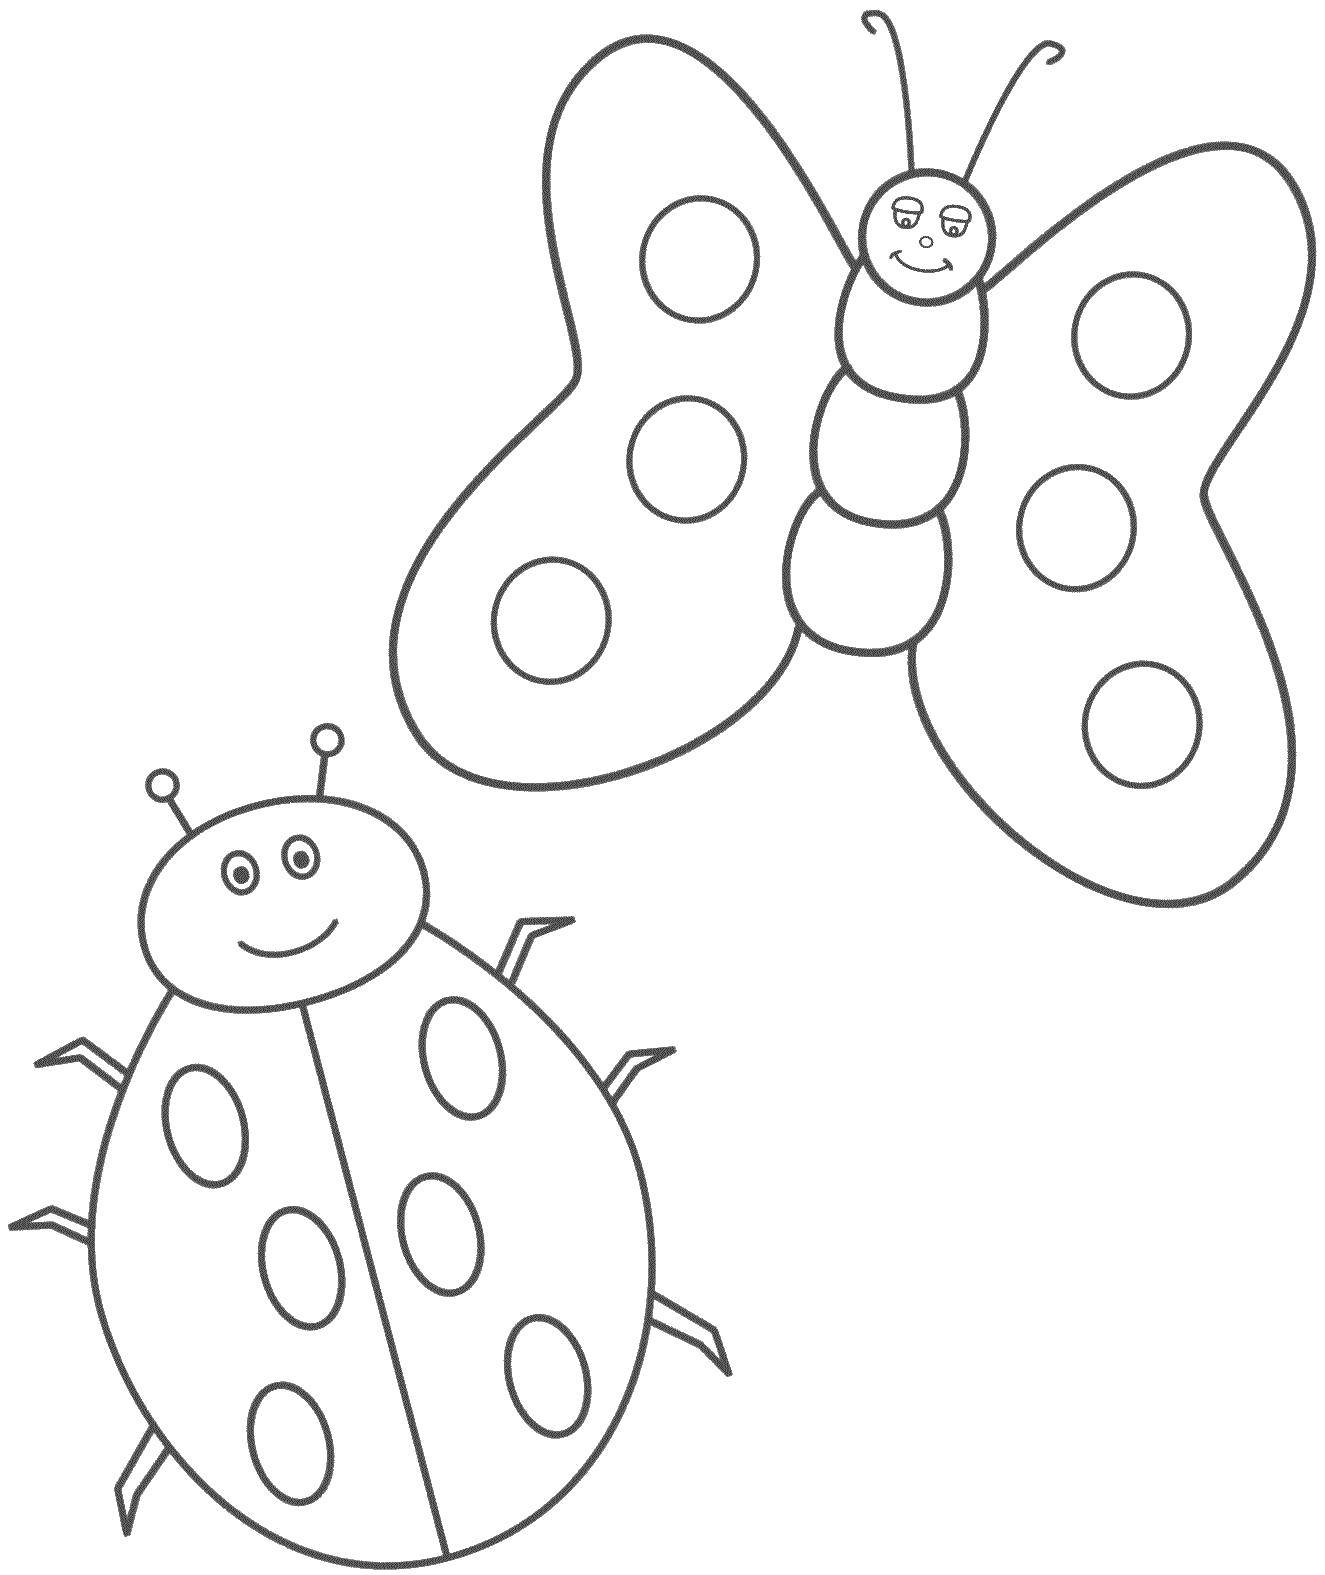 Шаблоны для 1 младшей группы. Насекомые. Раскраска. Бабочка раскраска для детей. Раскраска насекомые для малышей. Трафарет насекомые для детей.